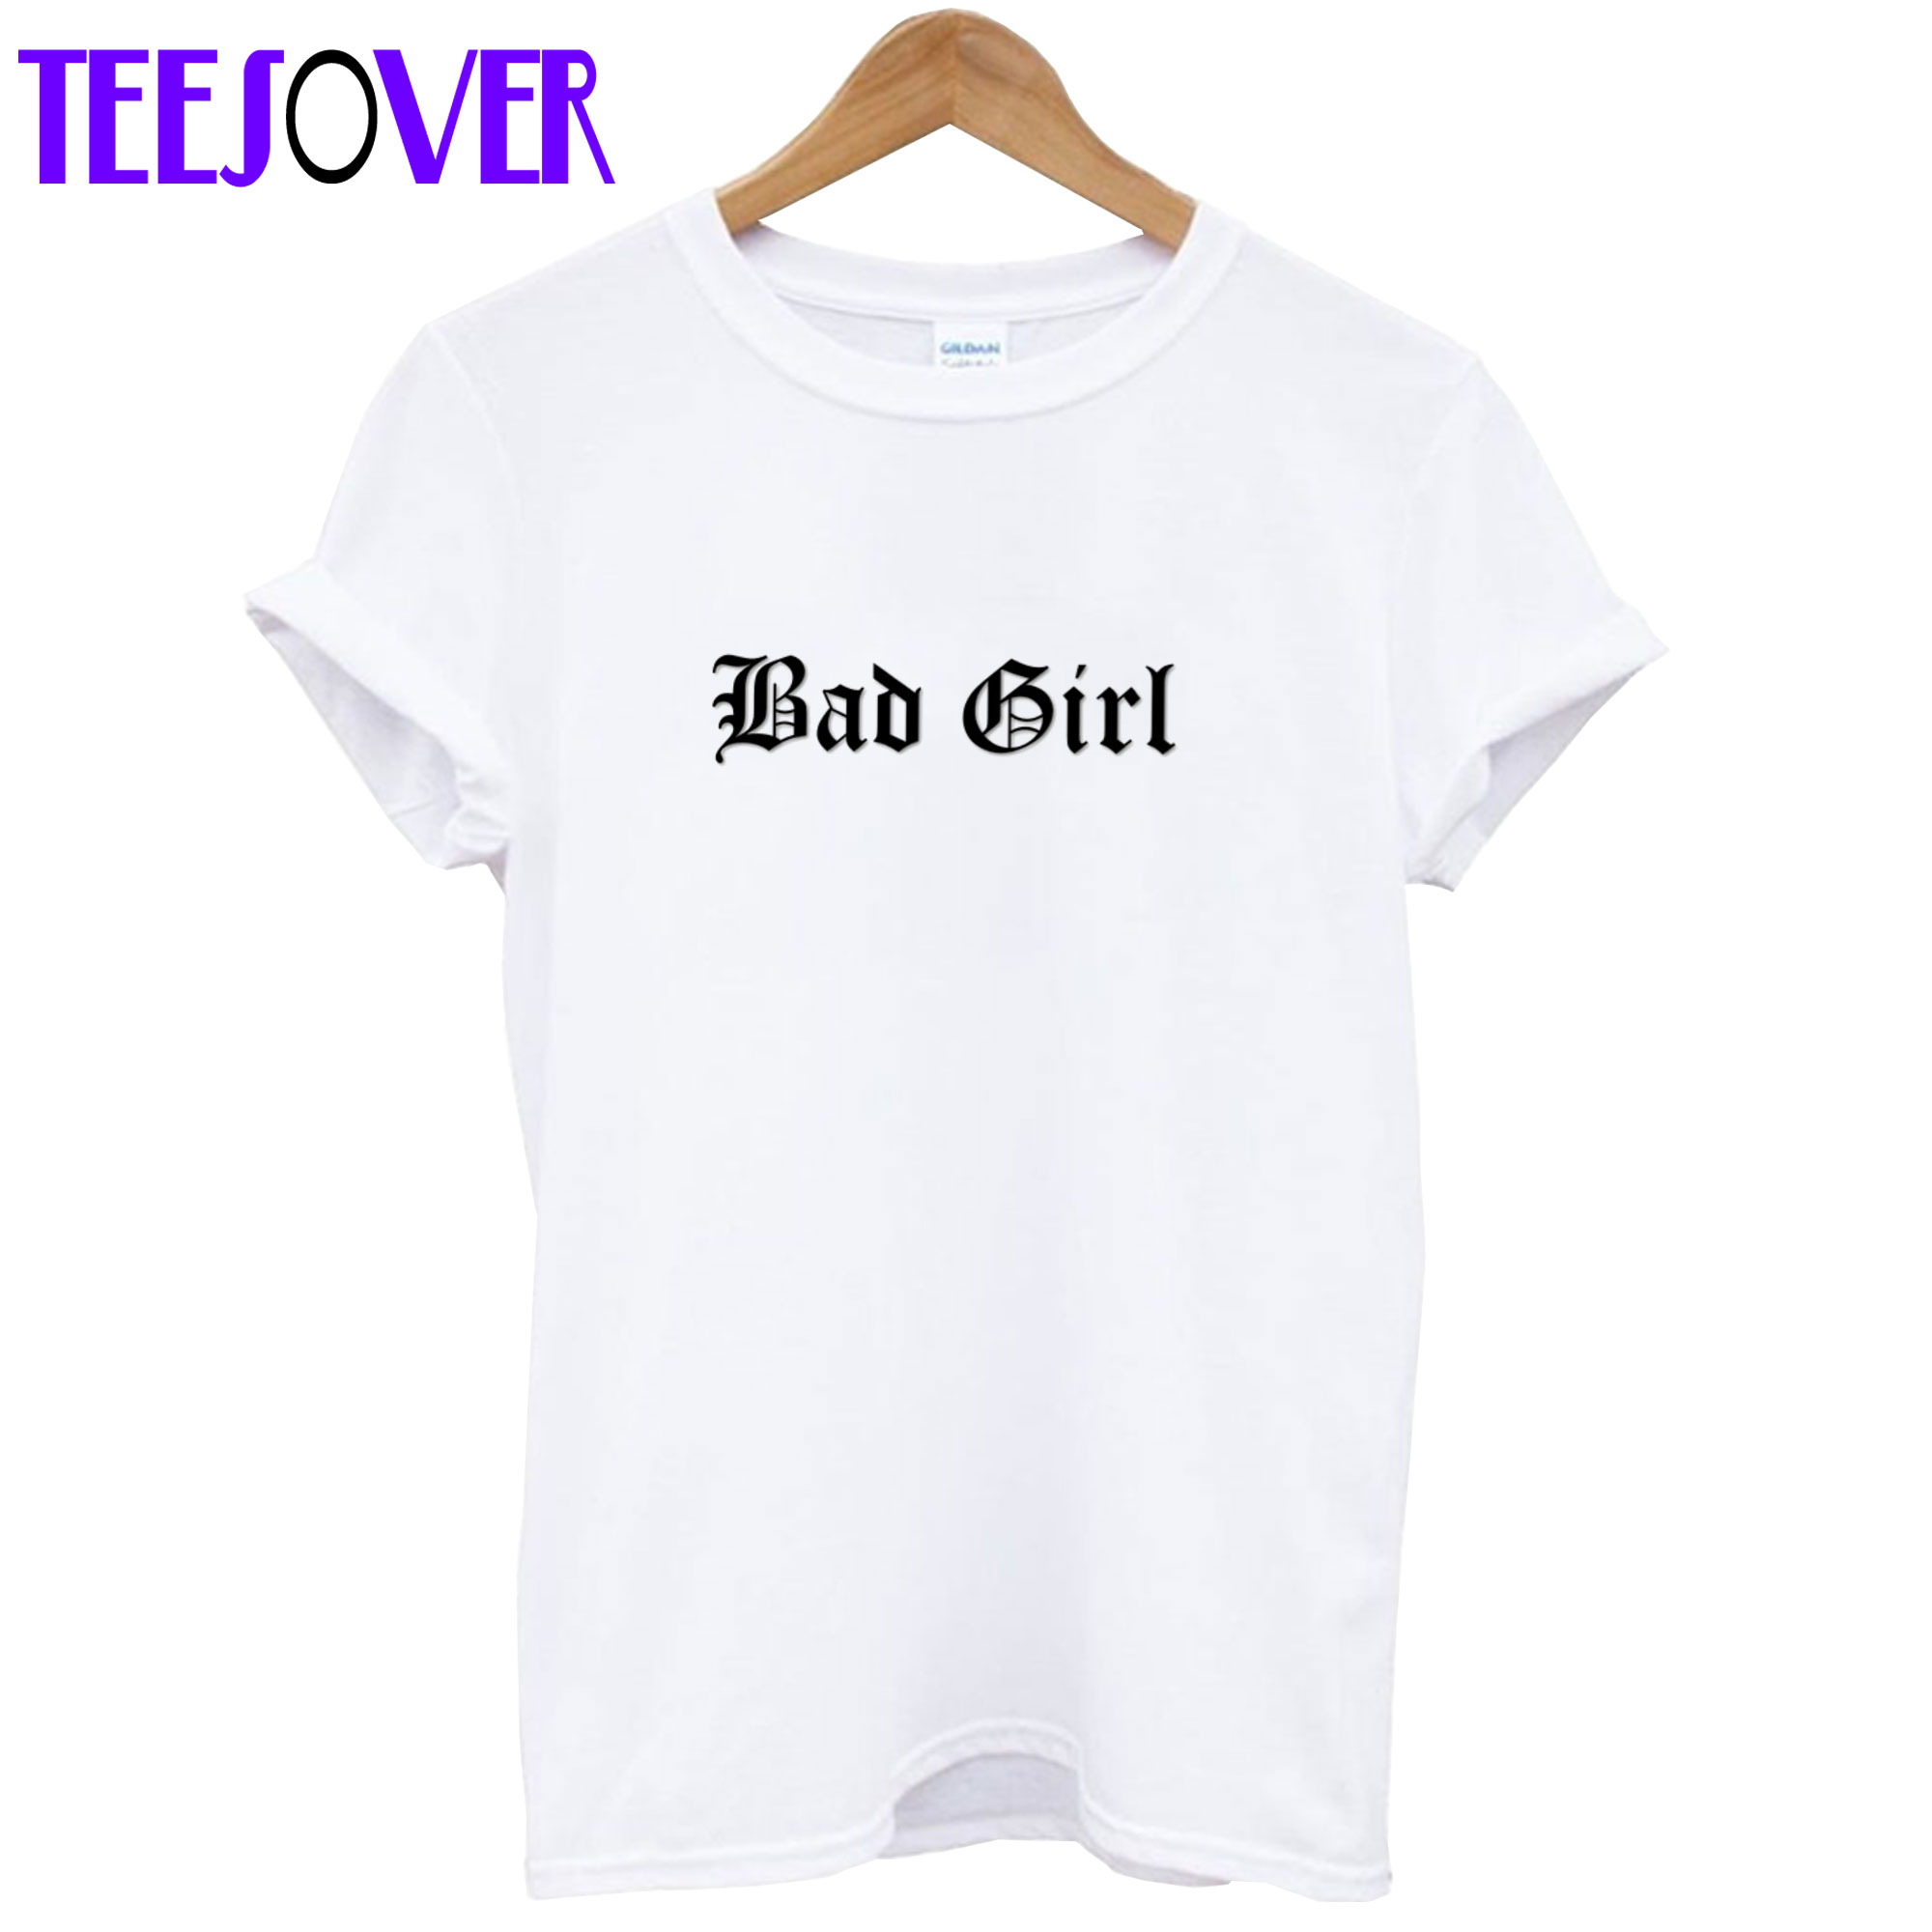 Bad Girl T Shirt